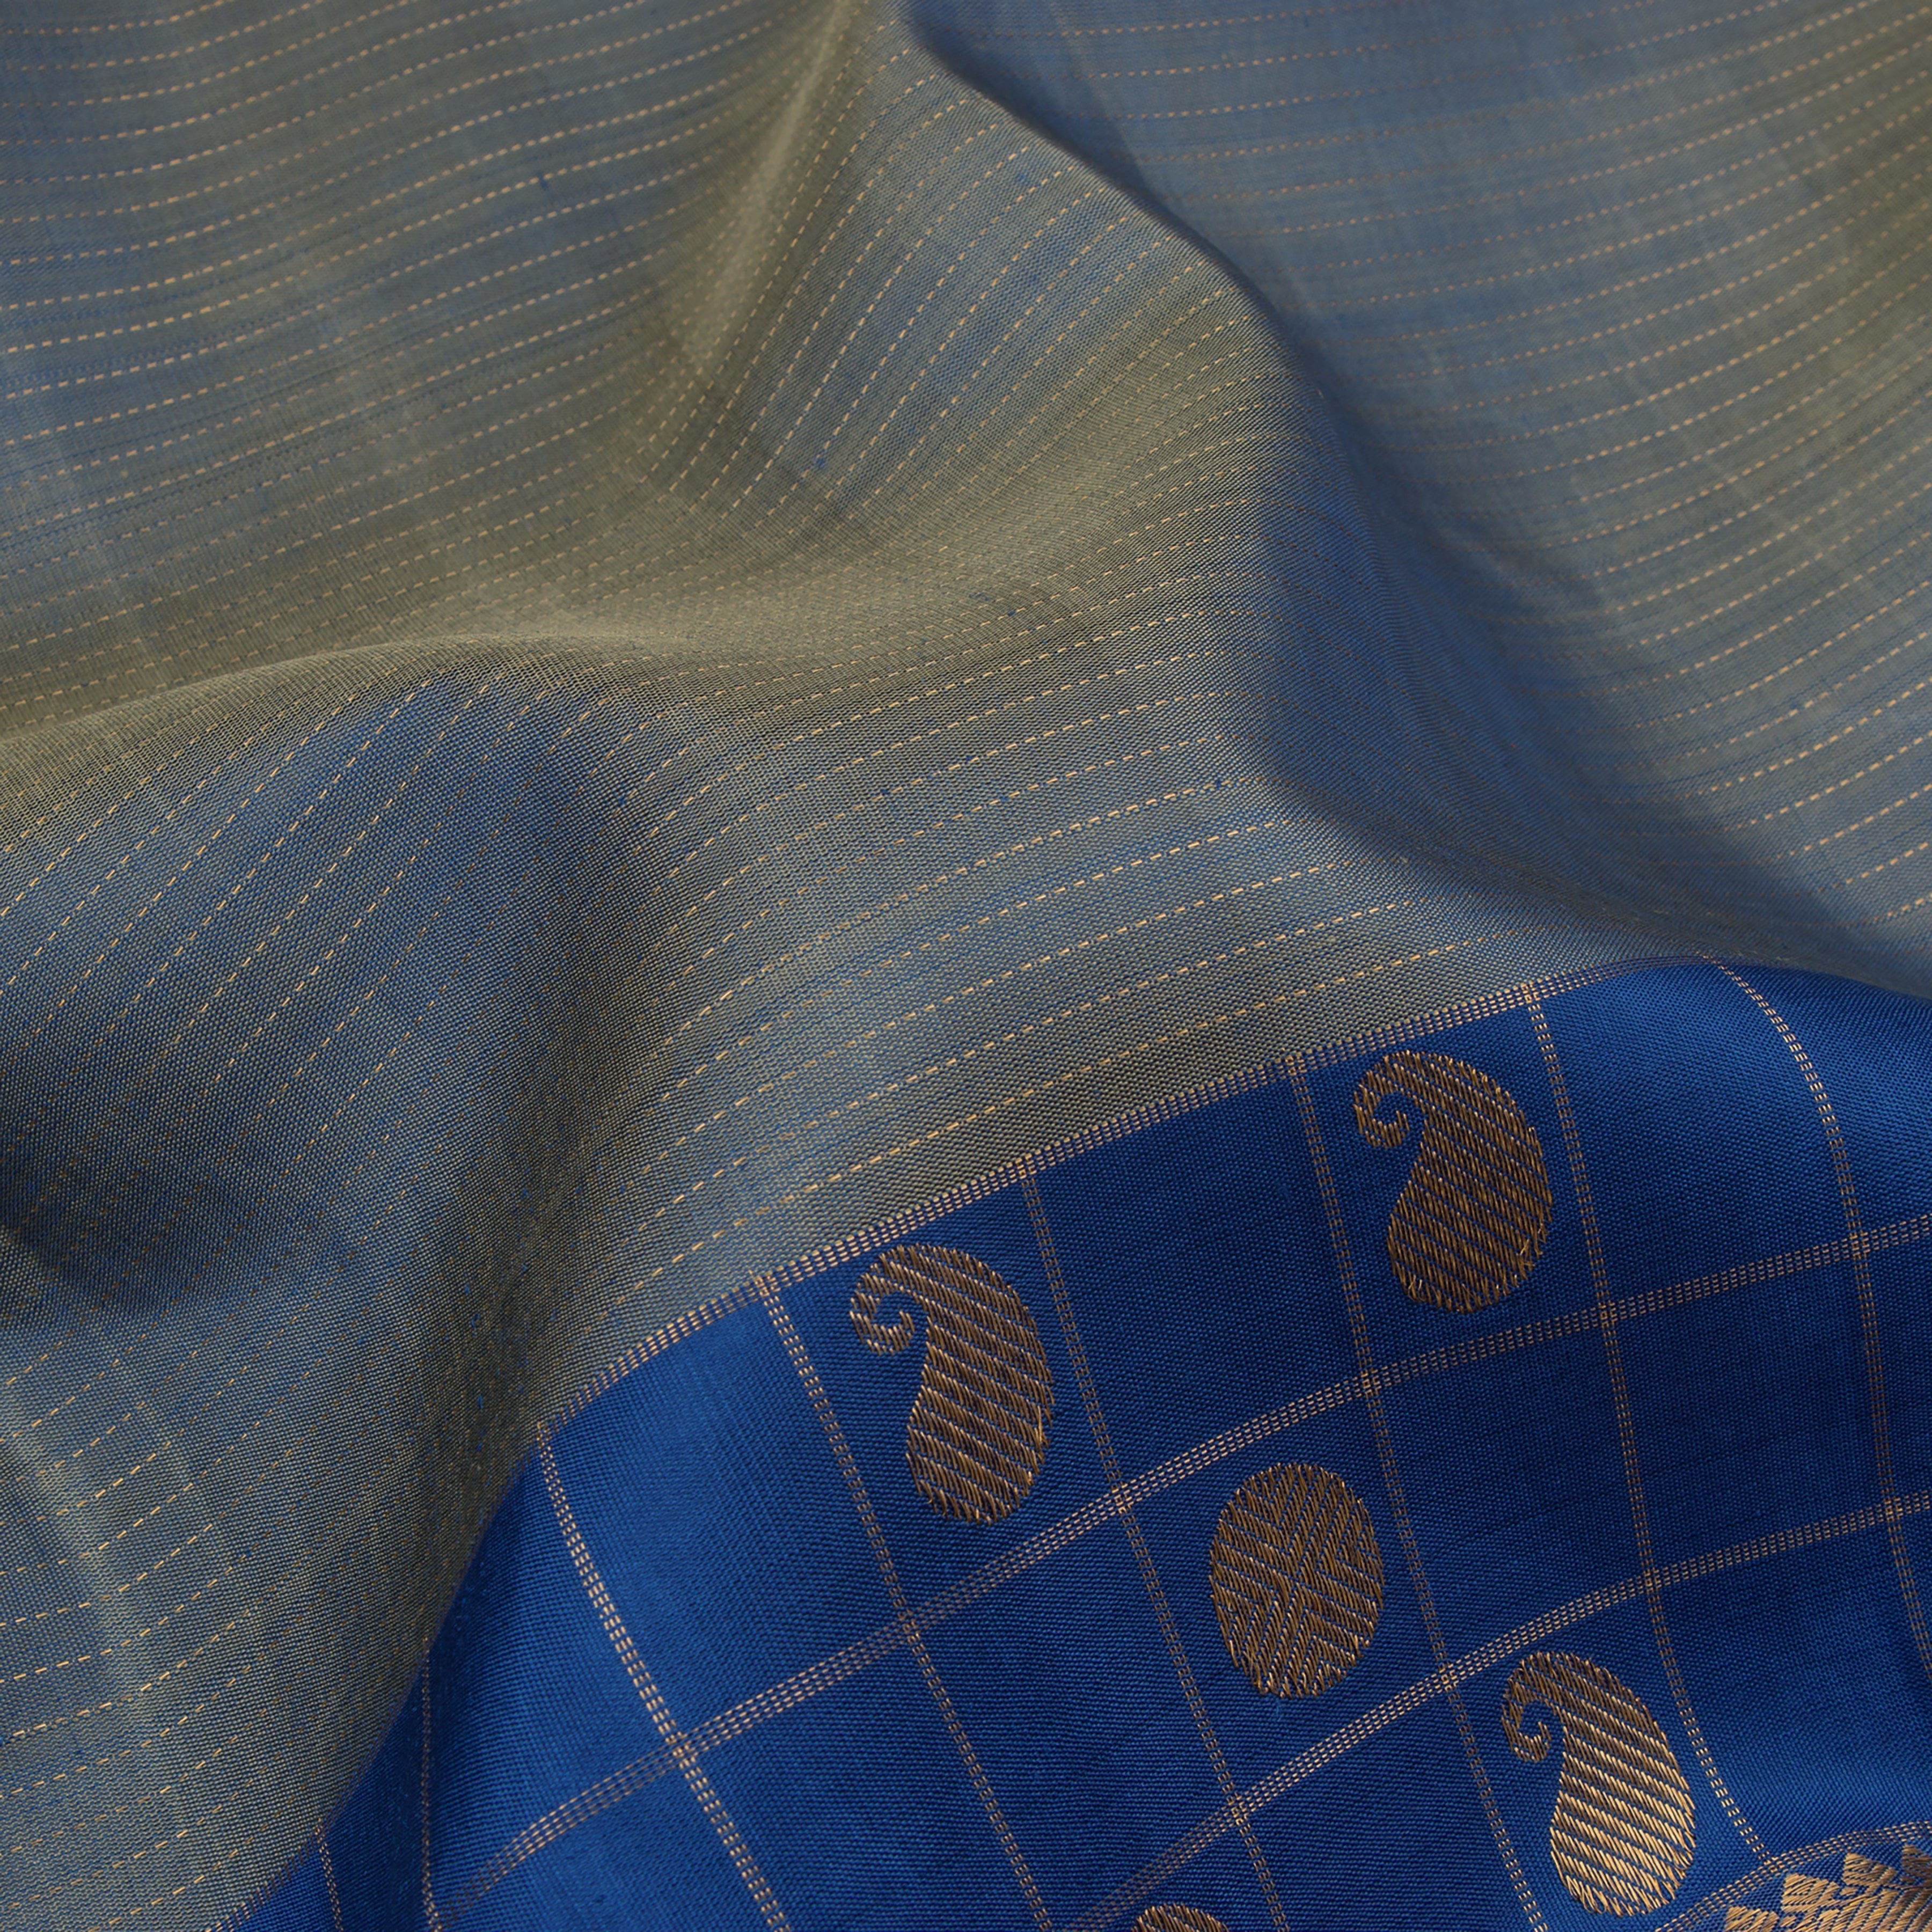 Kanakavalli Kanjivaram Silk Sari 22-599-HS001-12279 - Fabric View